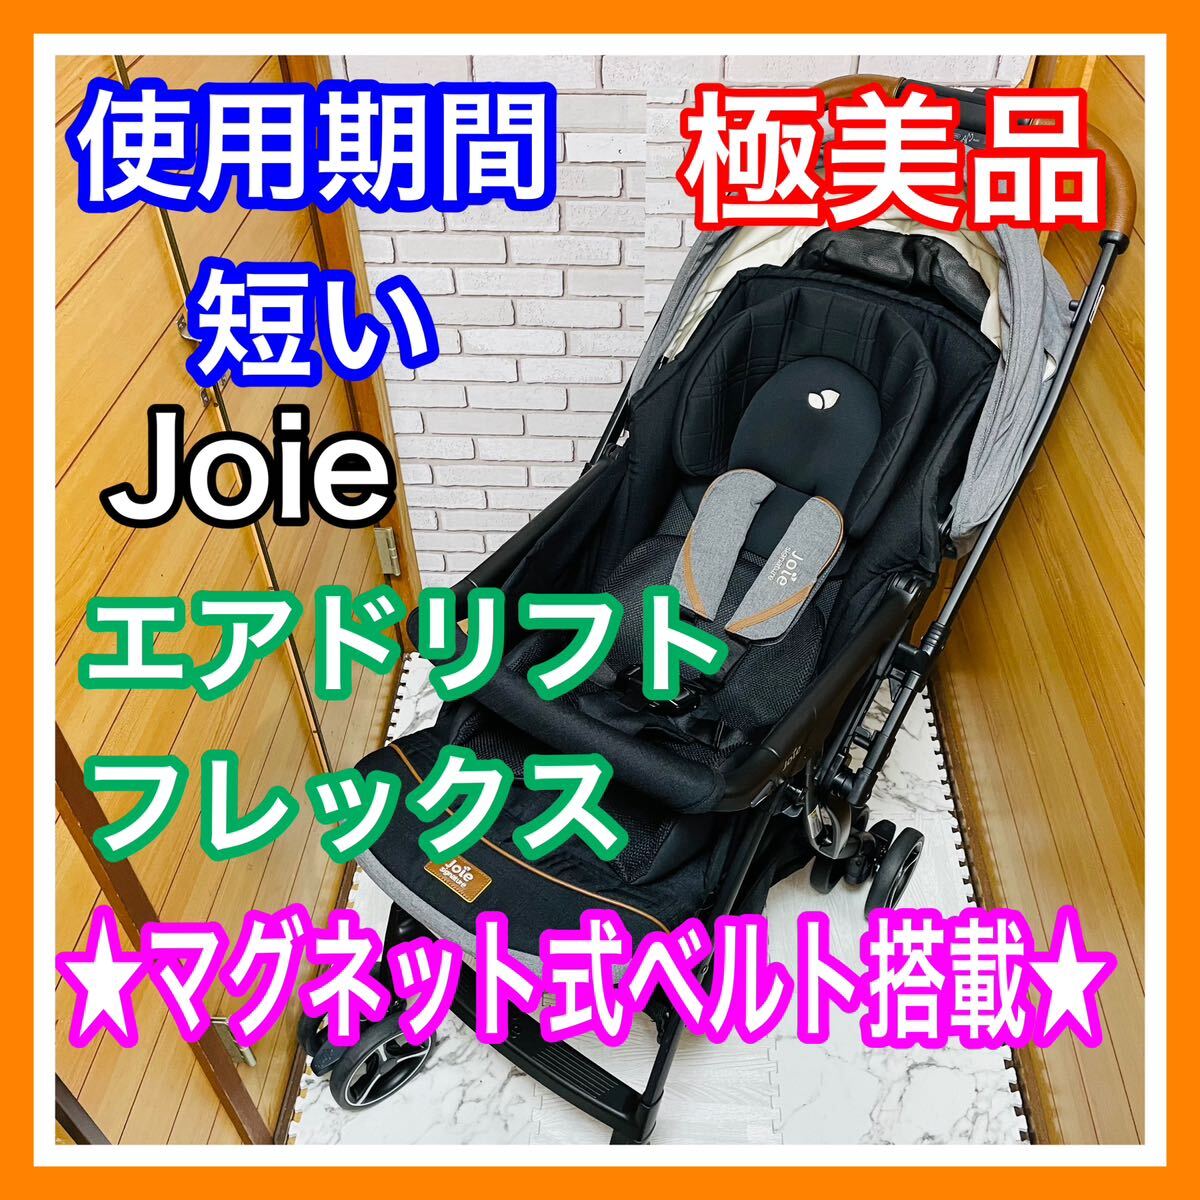  быстрое решение использование 1 месяцев превосходный товар Joie воздушный дрифт Flex Eclipse магнит тип ремень коляска включая доставку 7000 иен . снижена цена sma Baki 